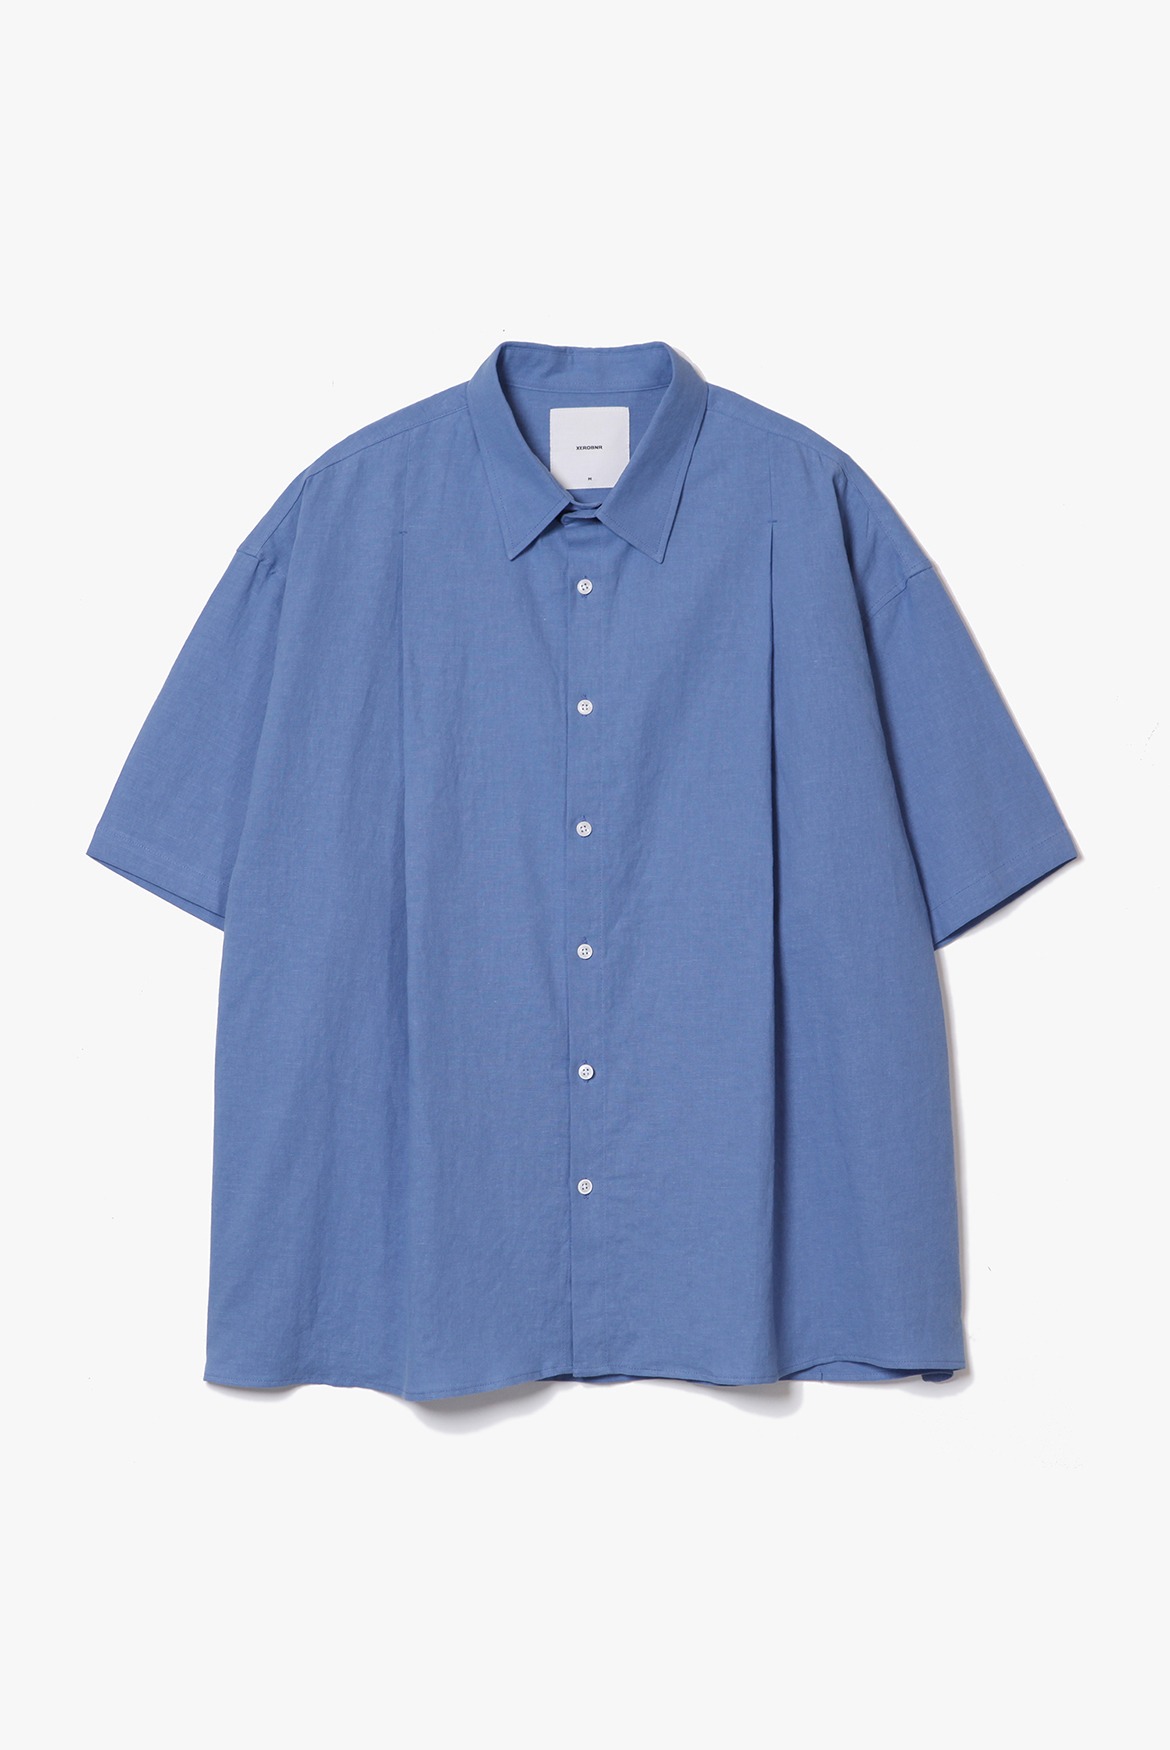 Deep Tuck Linen Shirts [Sax blue]